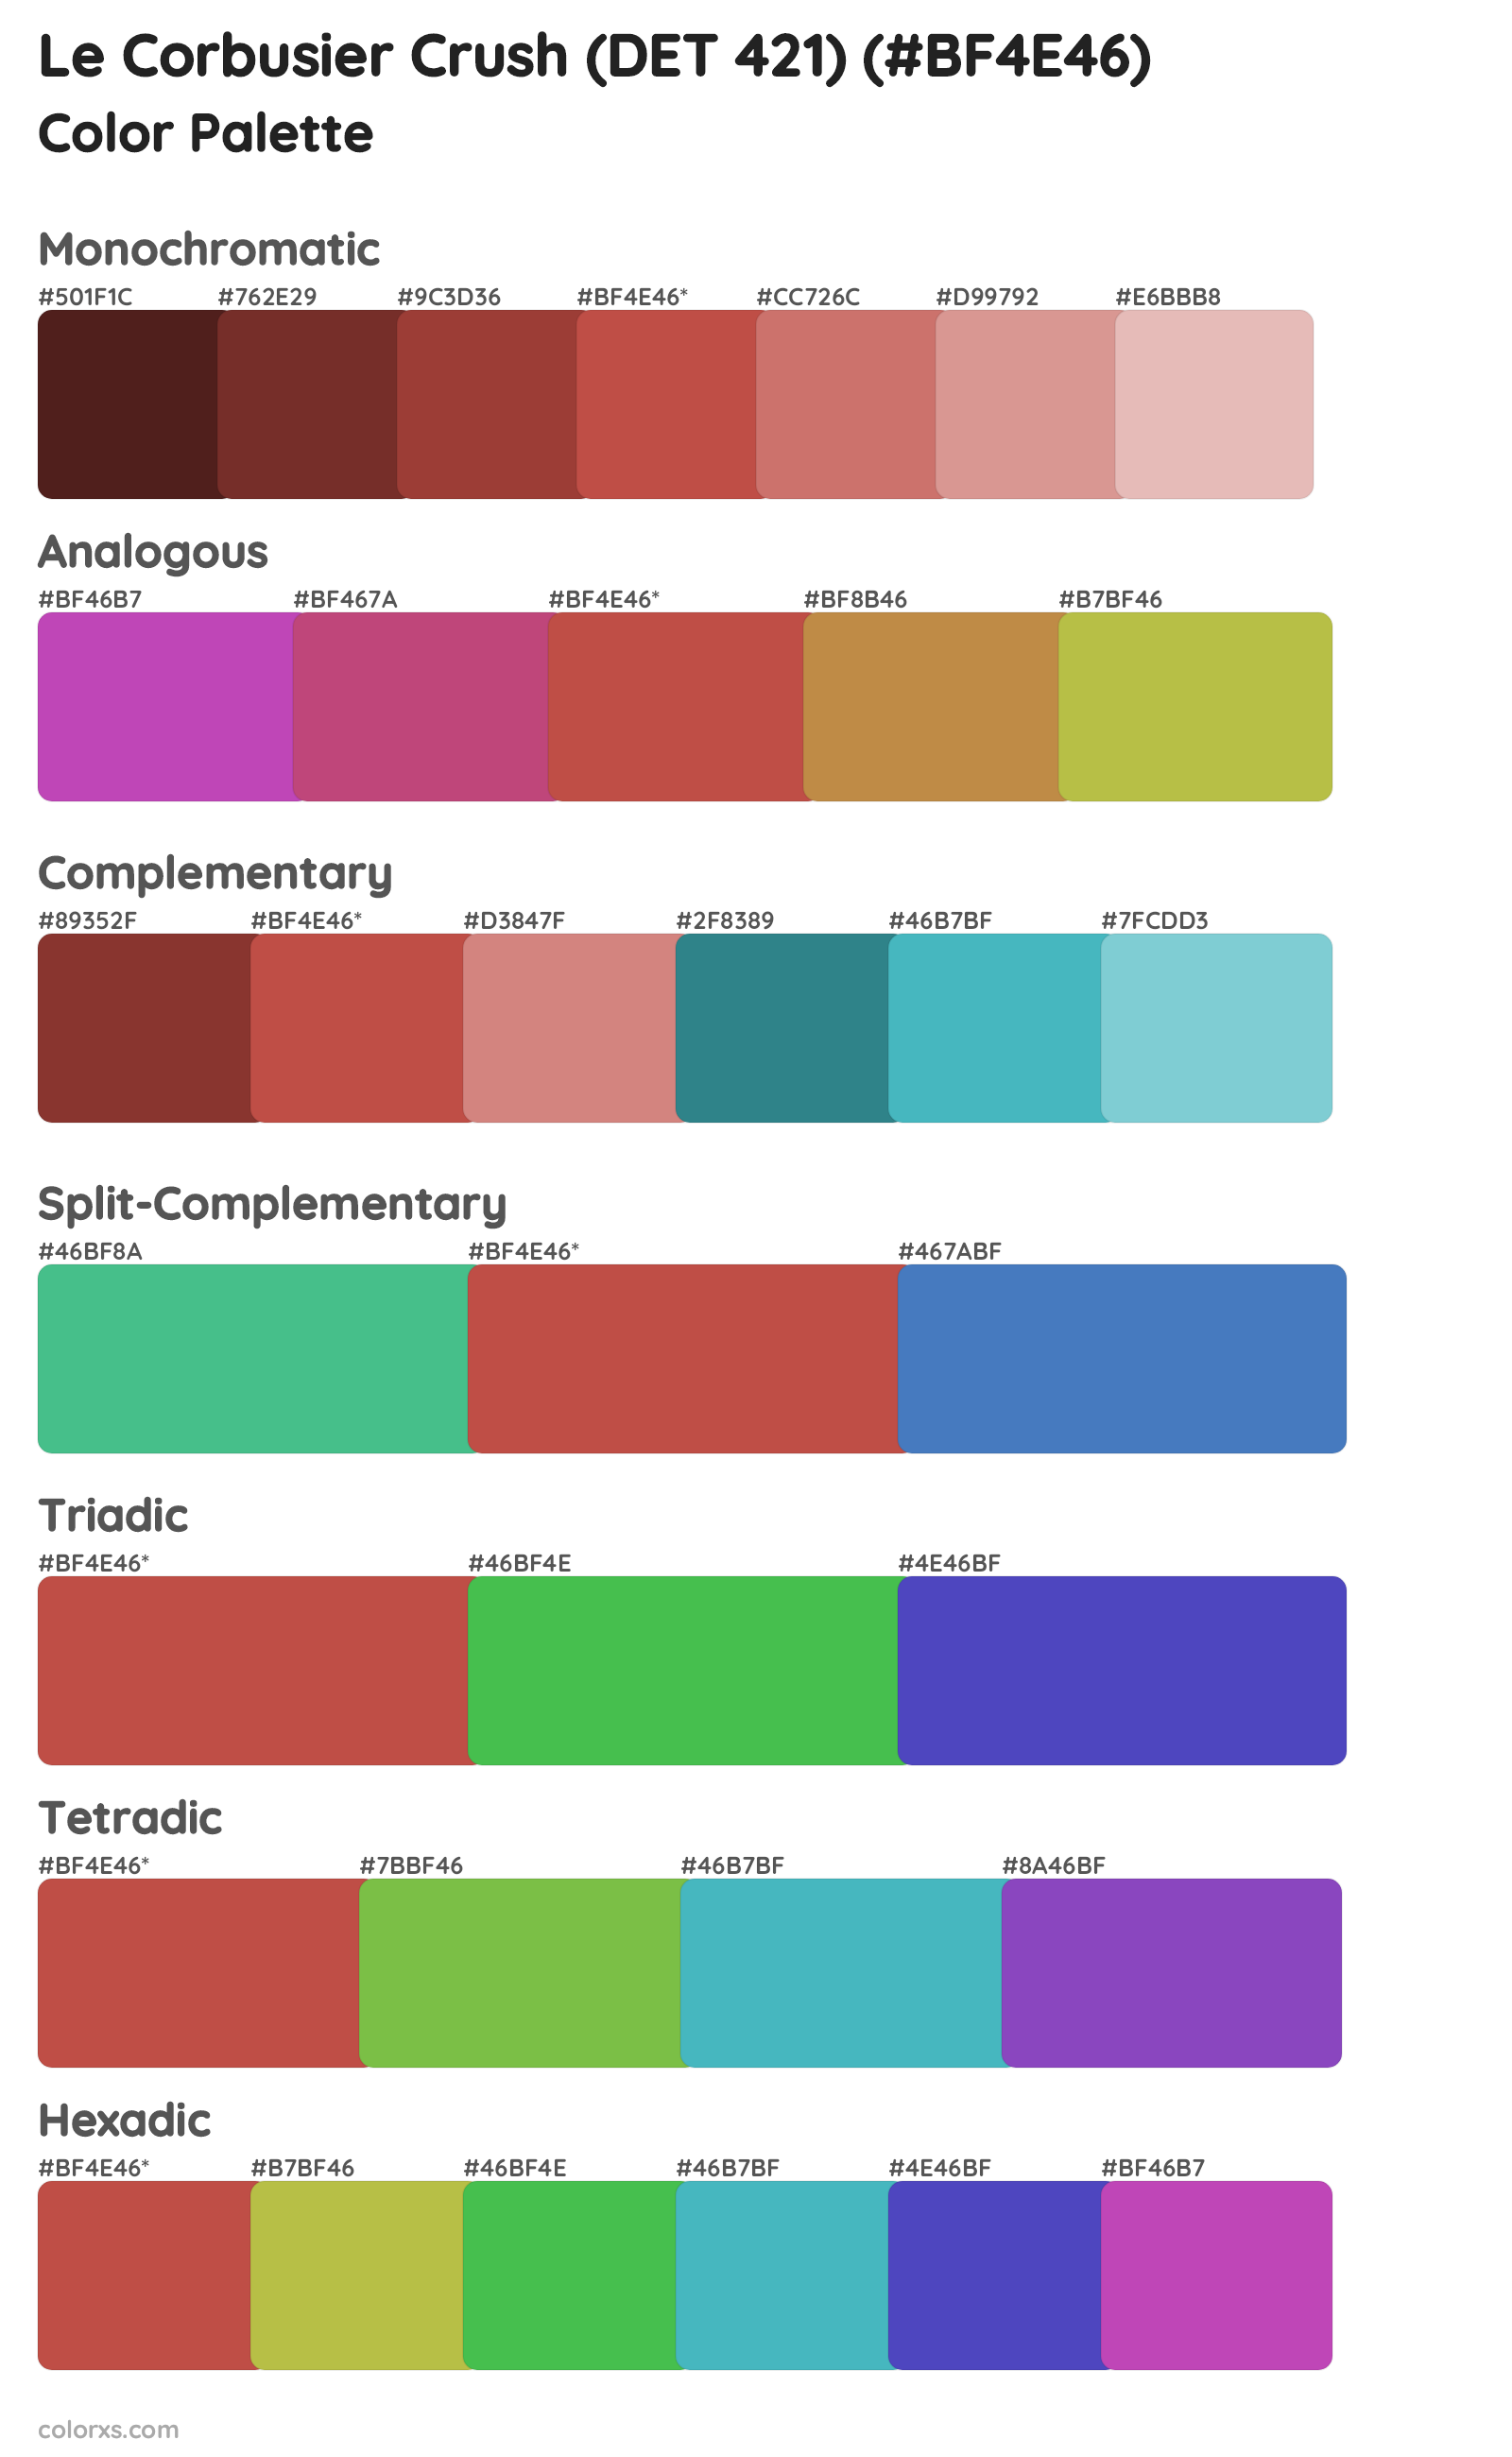 Le Corbusier Crush (DET 421) Color Scheme Palettes